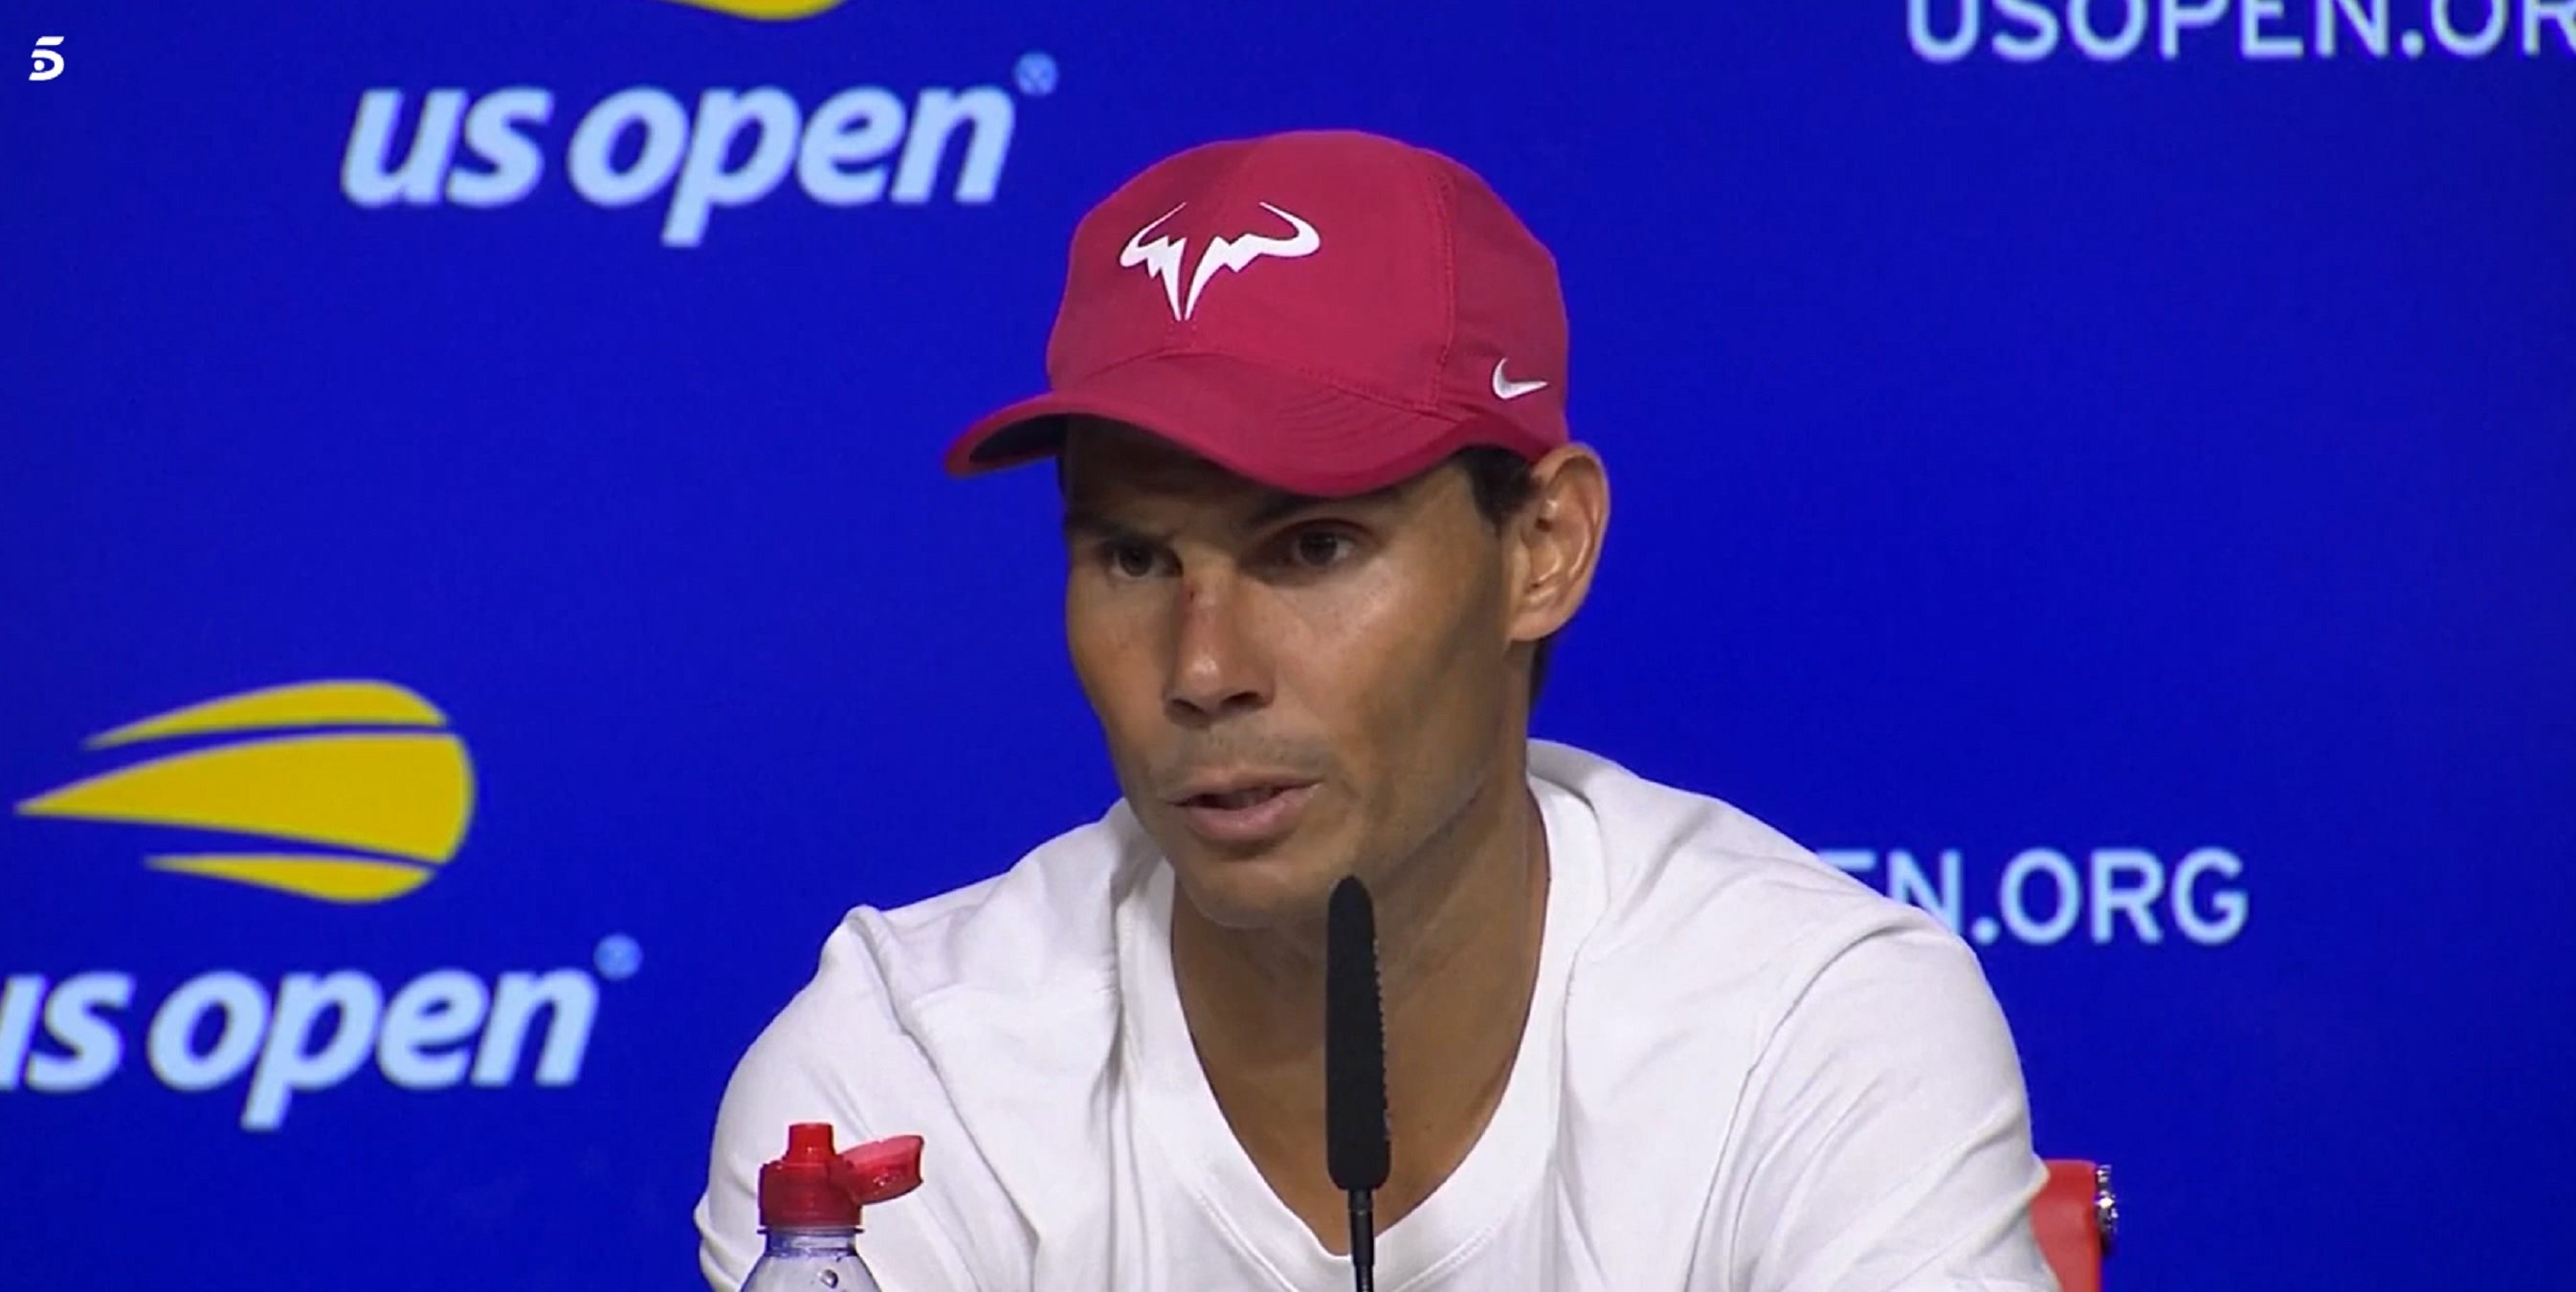 Rafa Nadal "pasa" del tenis: "Tengo cosas más importantes que atender"